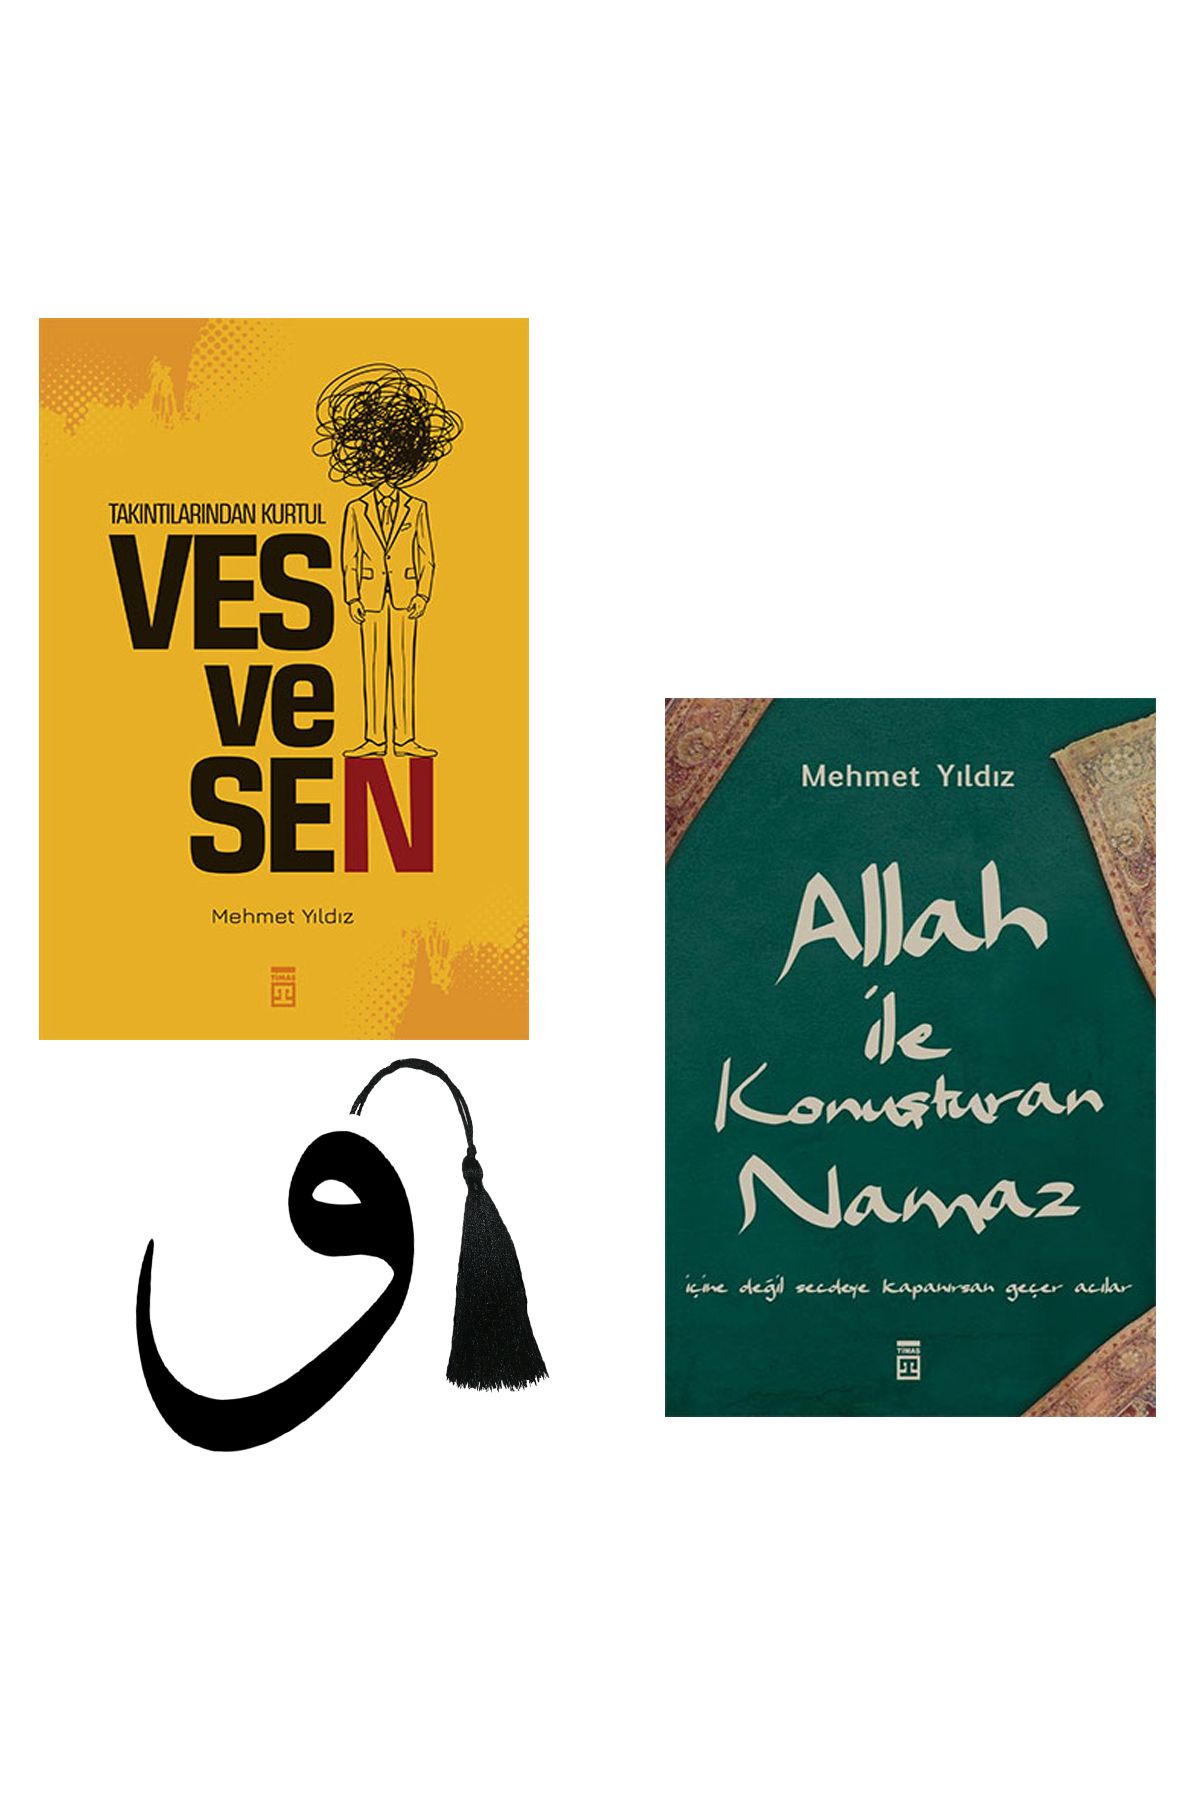 Timaş Yayınları Mehmet Yıldız - takıntılarından kurtul - vesvesen - Allah ile konuşturan namaz -yrtılmaz ayraçhediye